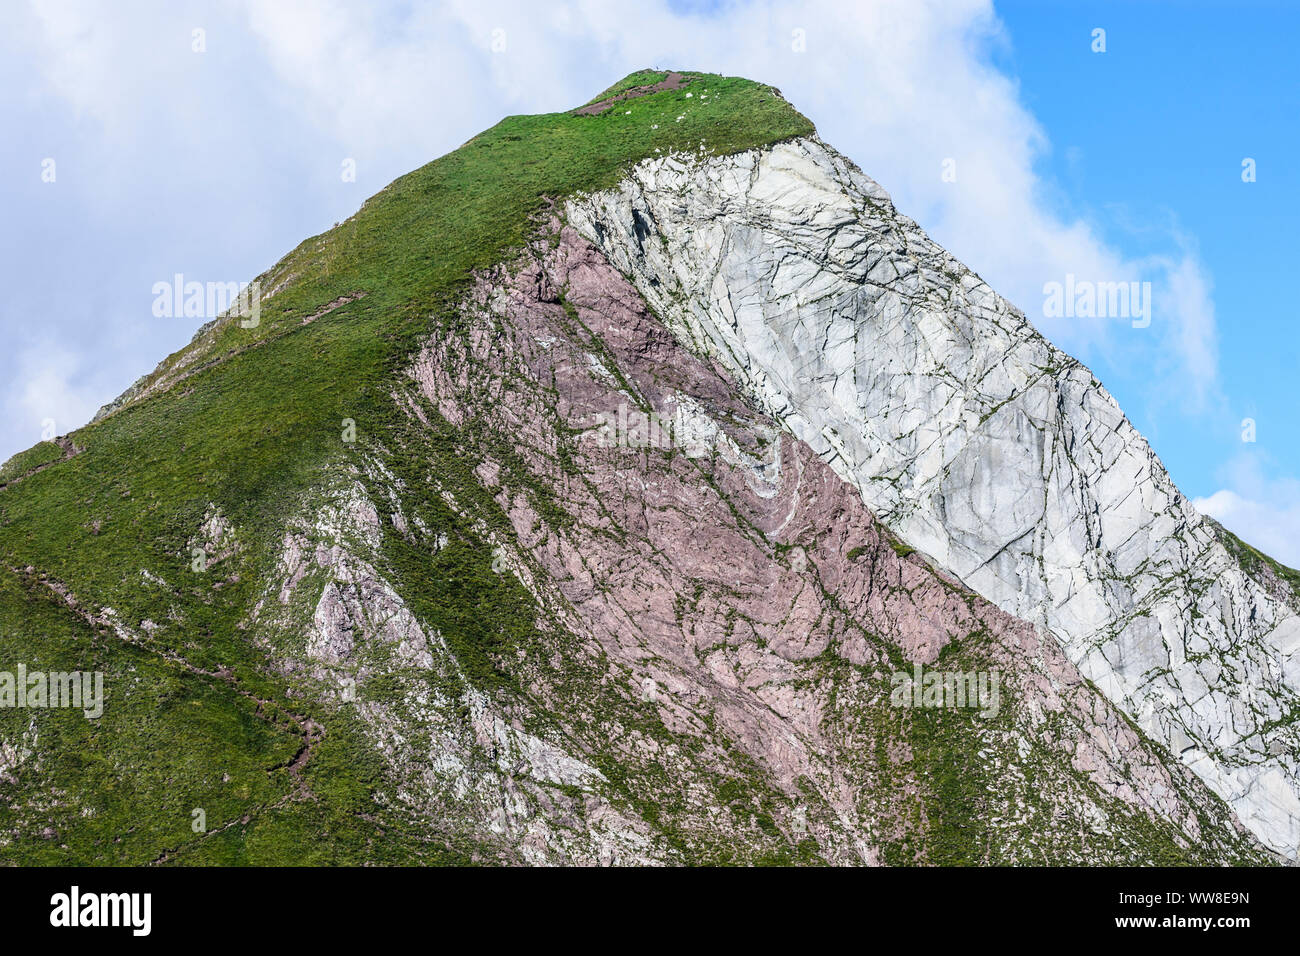 ¤AllgÃ AllgÃ¤uer Alpen, Alpes, Rothornspitze u montagne calcaire blanc, et red rock (plaque), chert colorés de la vallée Lechtal, Tyrol, Autriche Banque D'Images